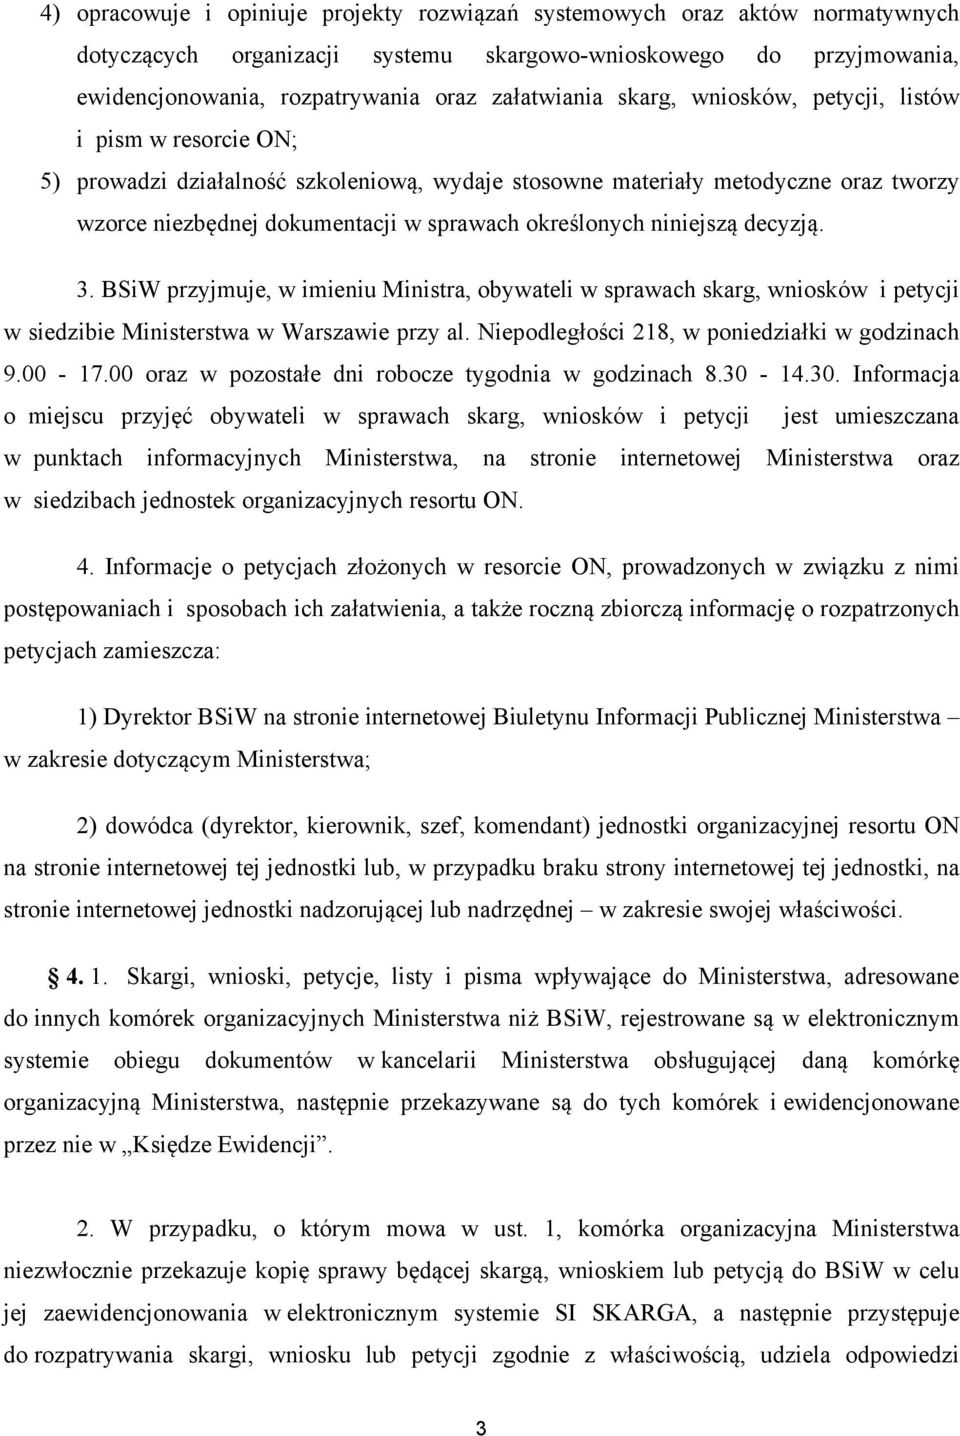 niniejszą decyzją. 3. BSiW przyjmuje, w imieniu Ministra, obywateli w sprawach skarg, wniosków i petycji w siedzibie Ministerstwa w Warszawie przy al. Niepodległości 218, w poniedziałki w godzinach 9.